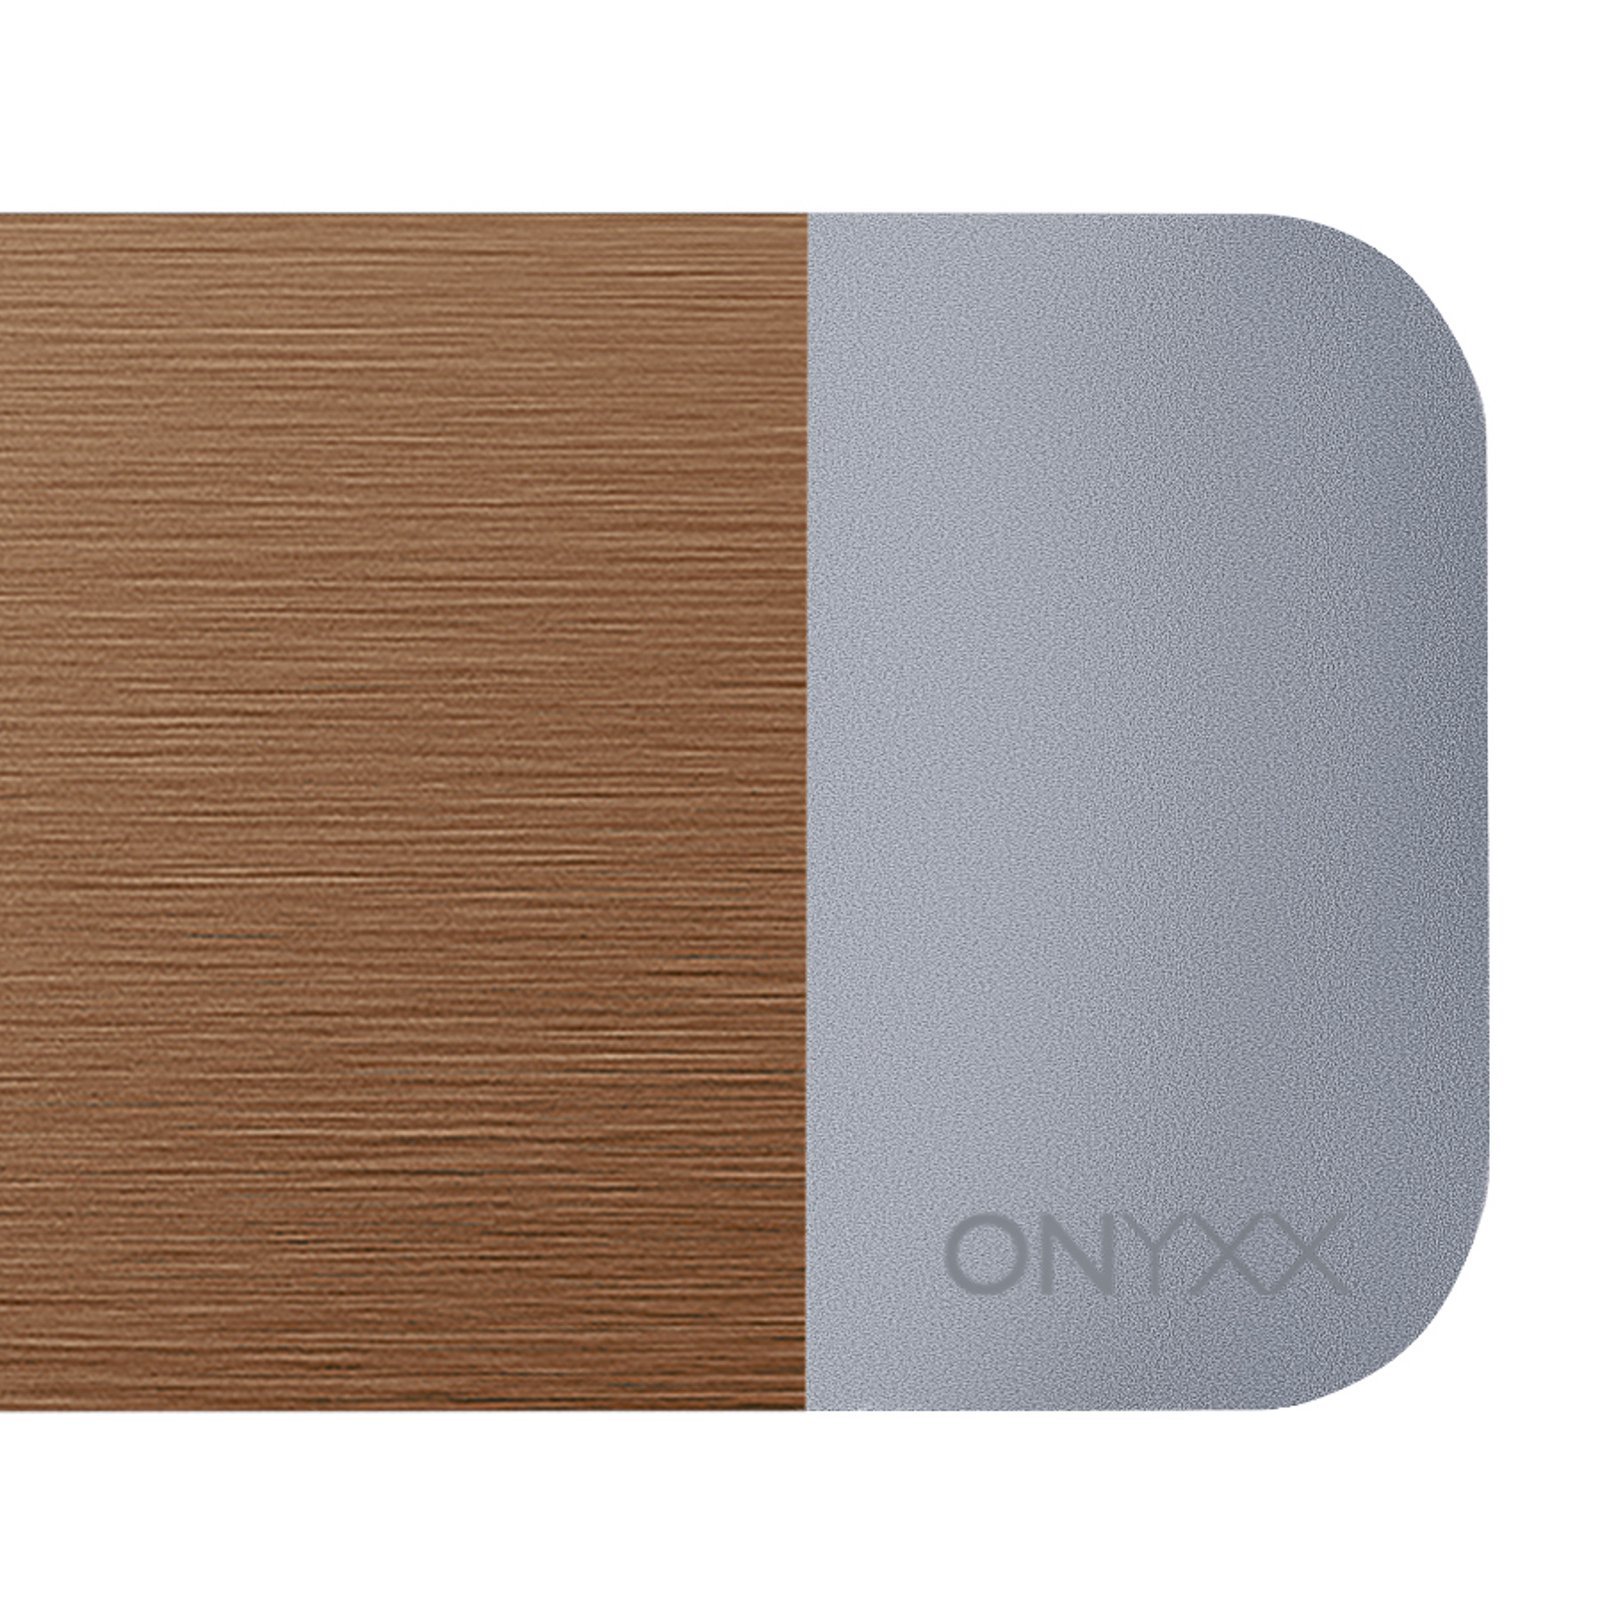 GRIMMEISEN Onyxx Linea Pro Pendel bronze/silber